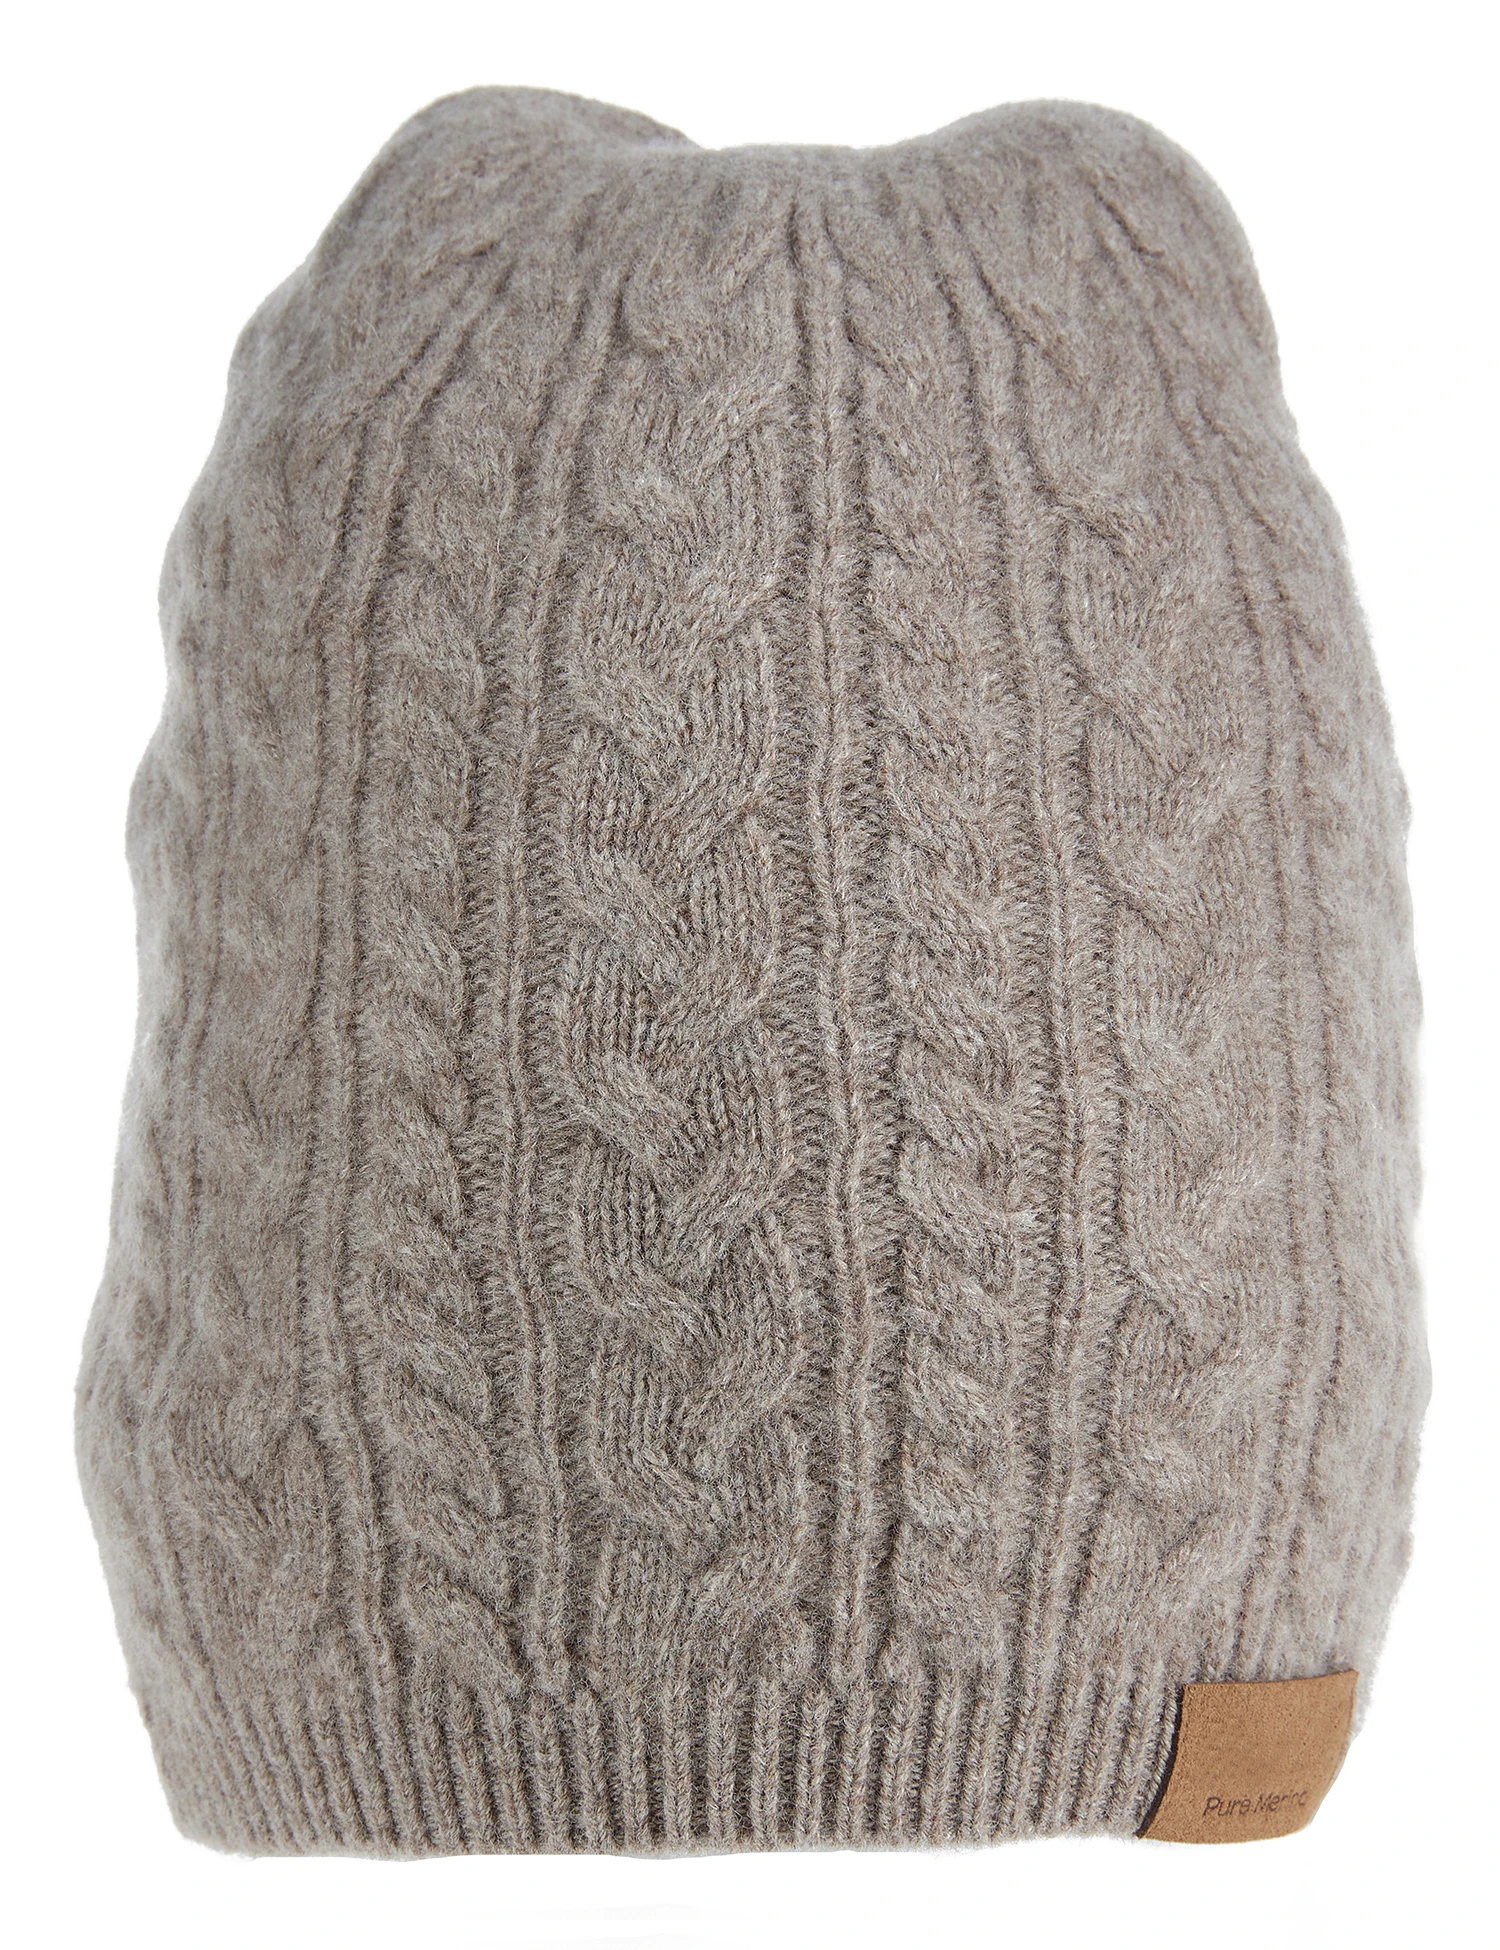 

LONGMING Winter Women's Hats Knitted 100% Merino Wool Men's Cap Warm Autumn Luxury Beanie Hat Fashion Knit Caps Trend Streetwear